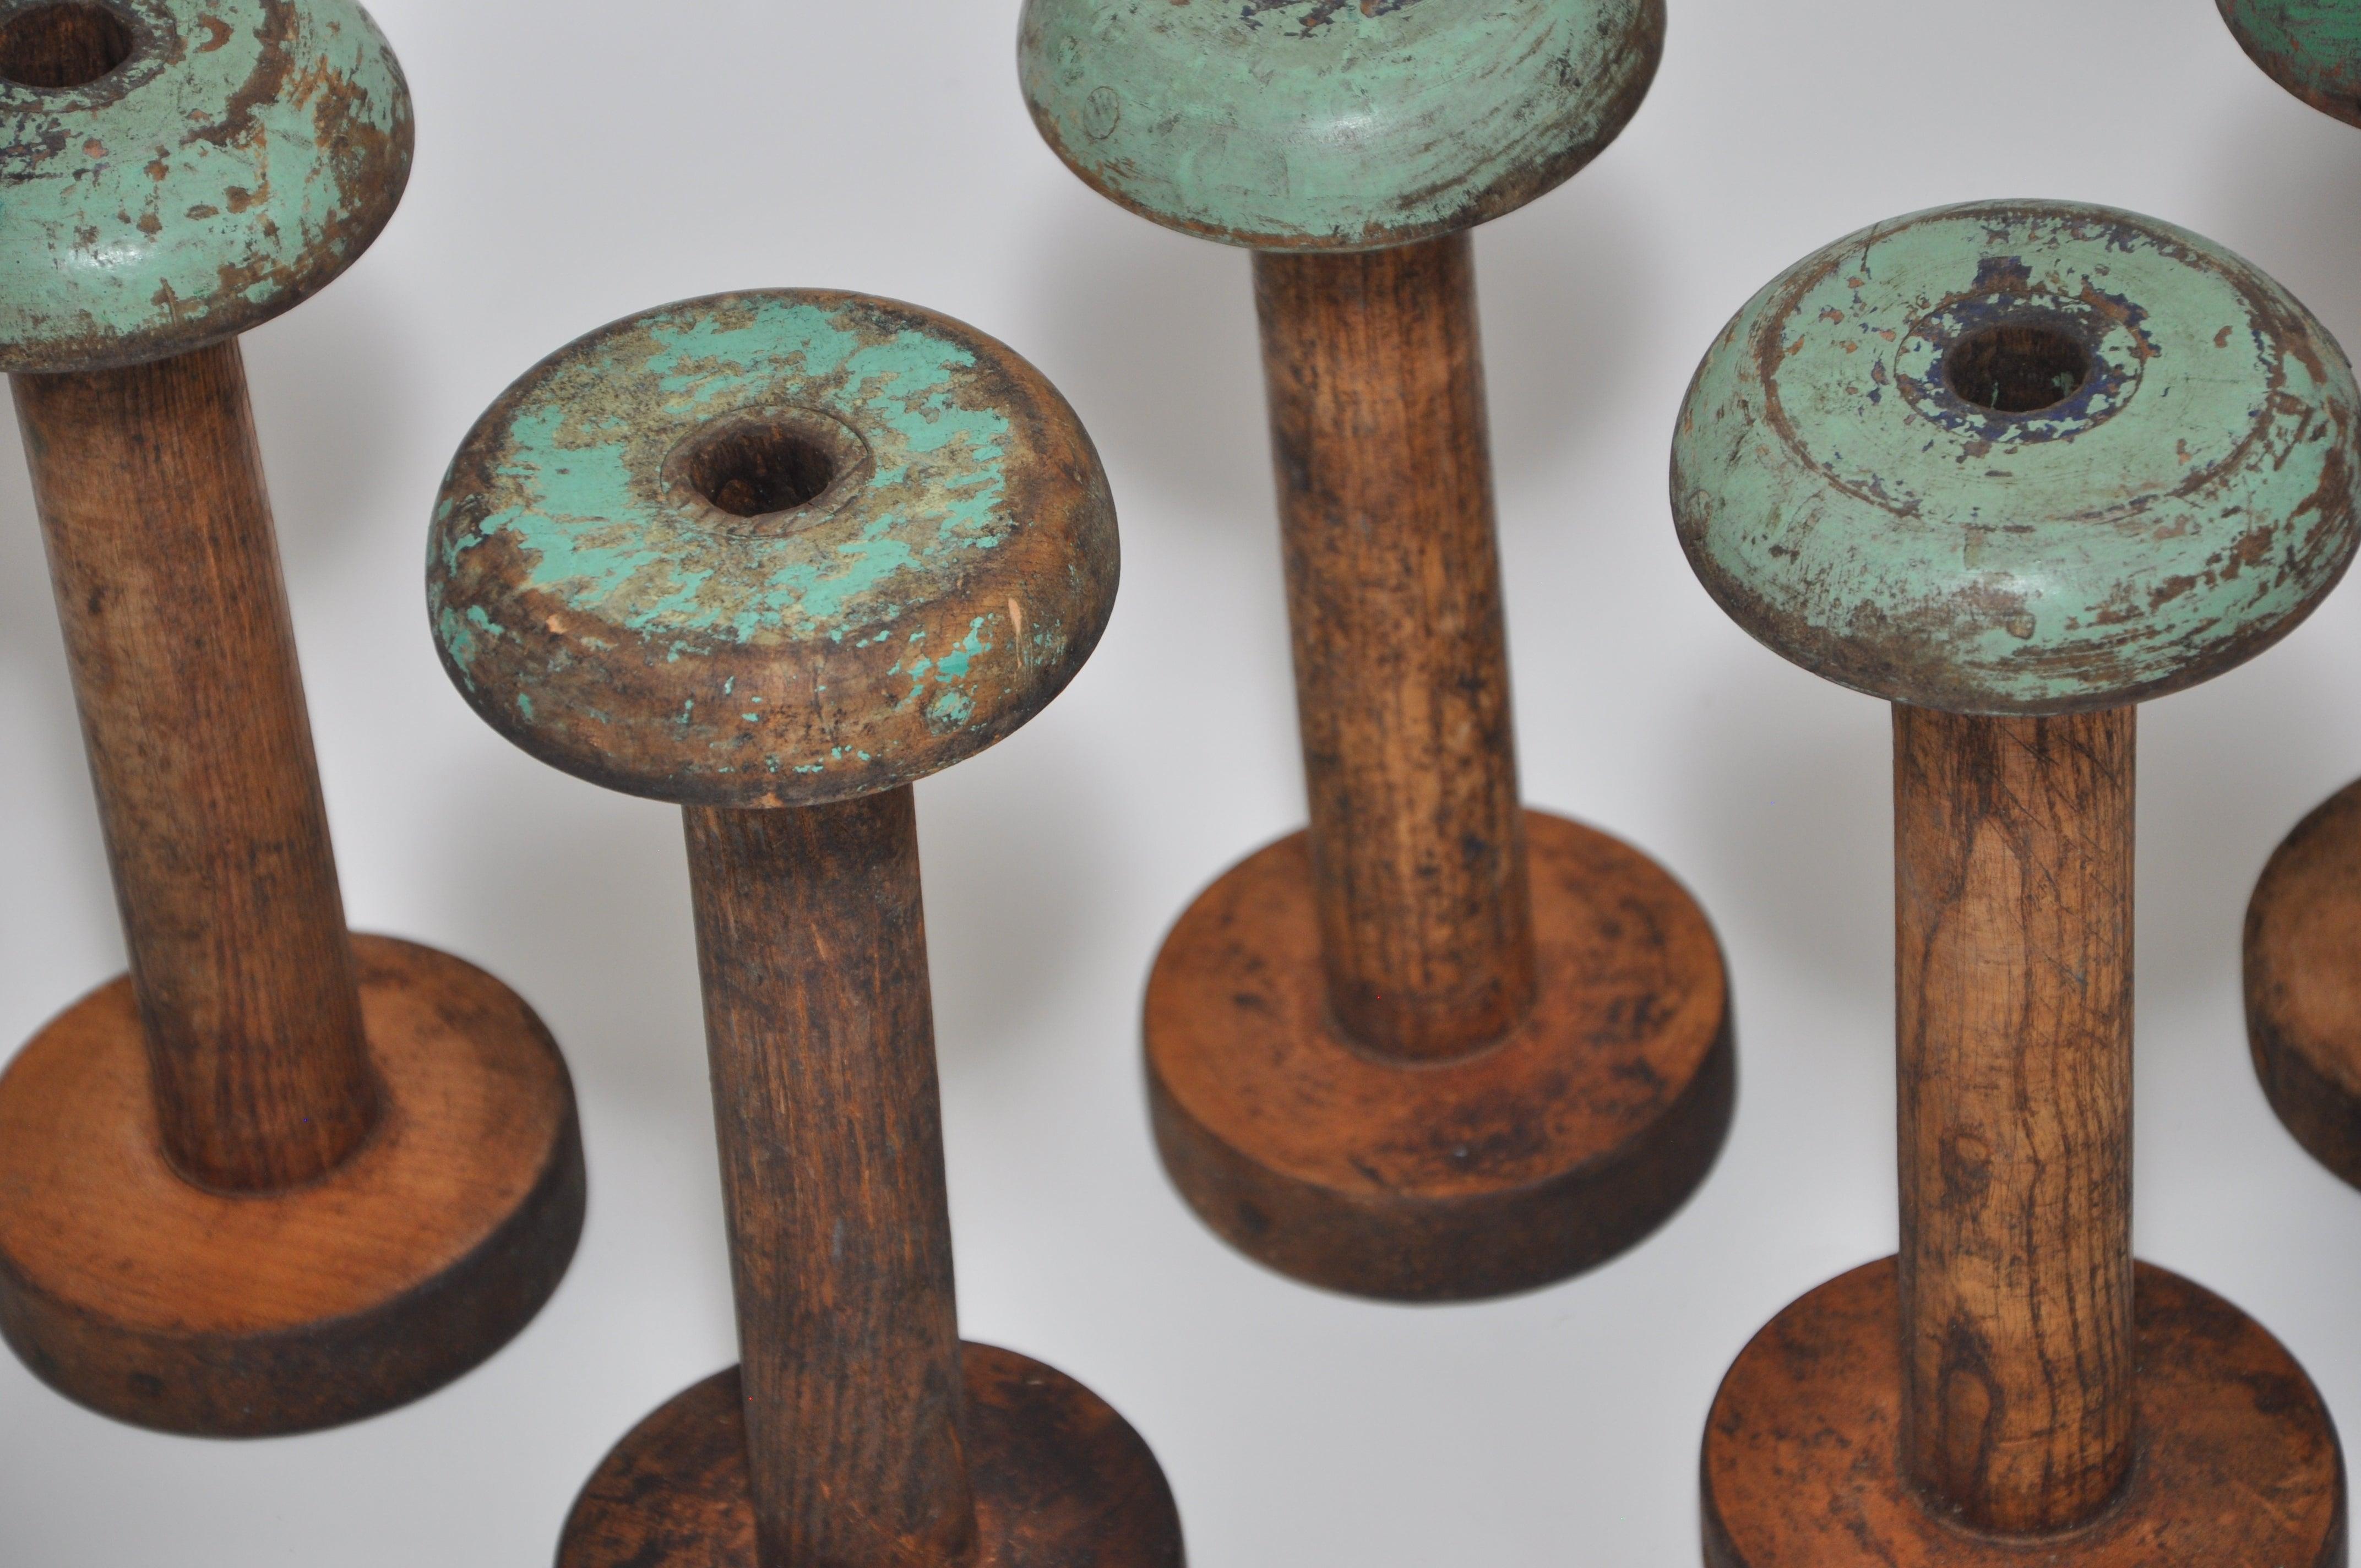 Cet ensemble de cinq bobines en bois est une belle relique vintage d'équipement industriel traditionnel provenant d'une ancienne filature de lin irlandaise située à Country Antrim, en Irlande du Nord. L'Irlande du Nord était à l'époque le berceau de